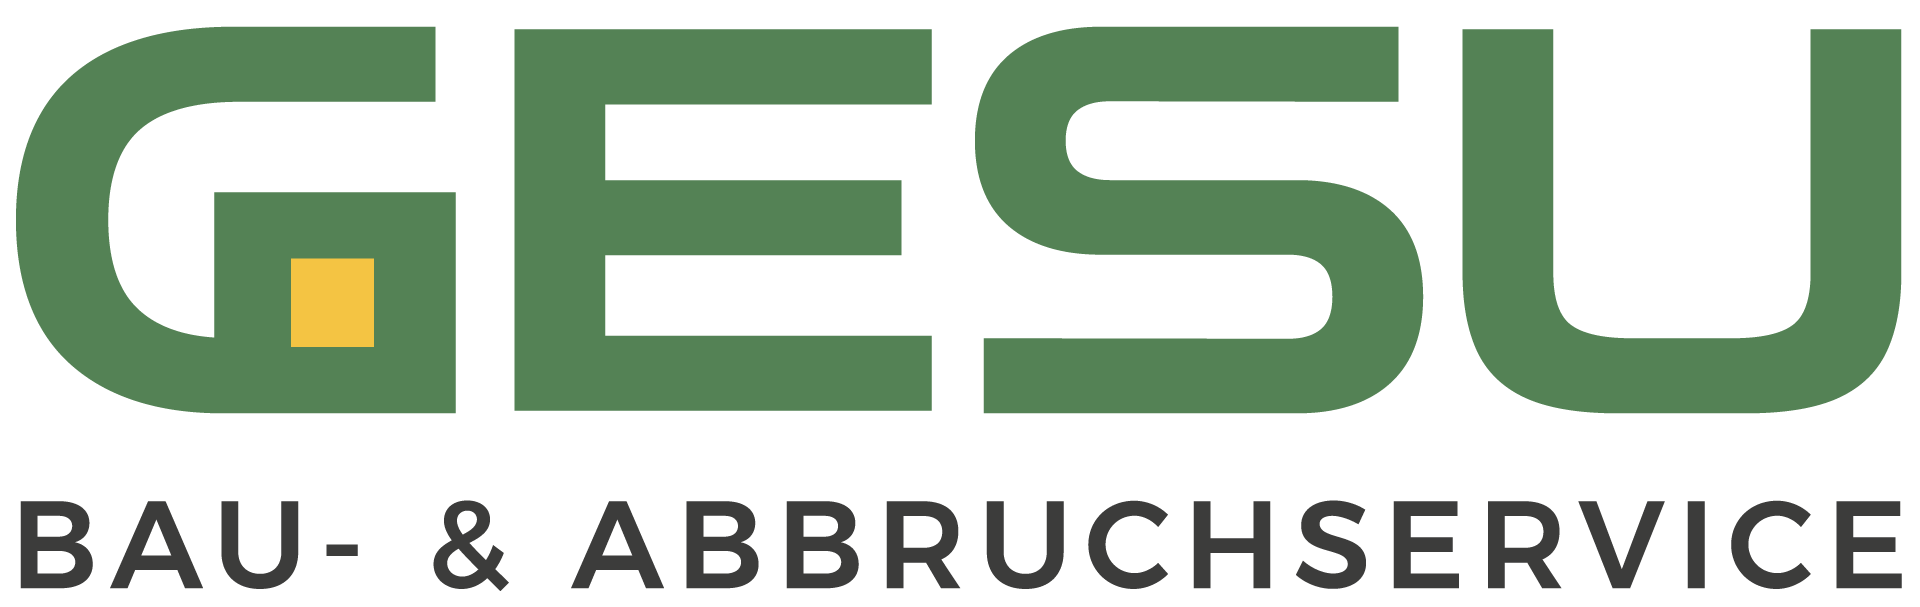 Bau- und Abbruchservice GmbH